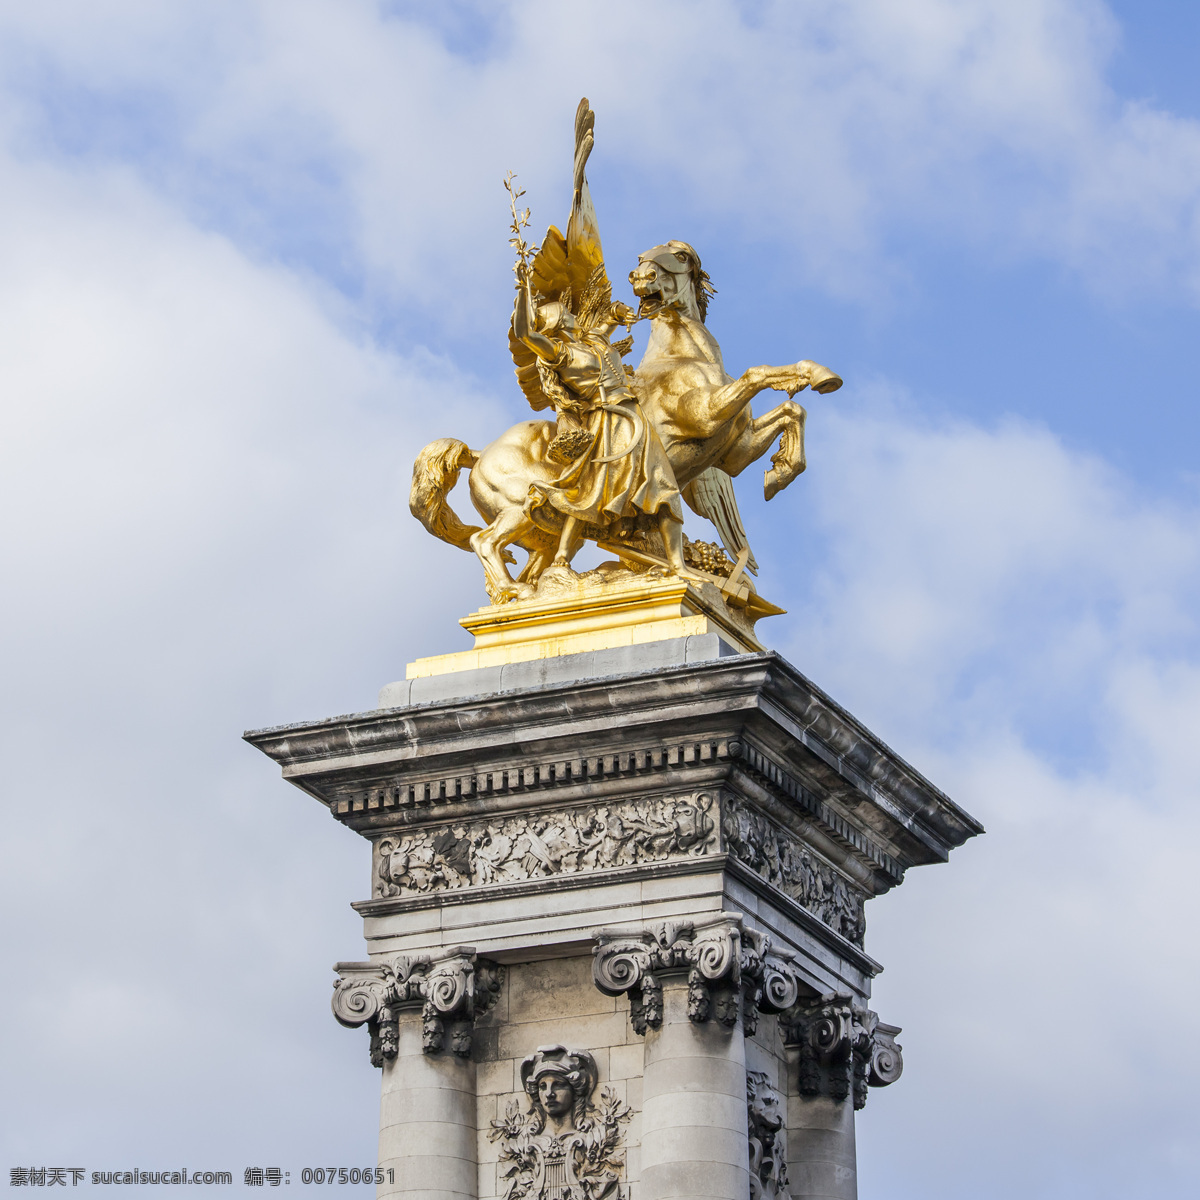 亚历山大 三世 桥 飞马 雕塑 城市雕塑 金色雕塑 巴黎风光 法国旅游景点 建筑风景 风景摄影 美景 风景名胜 风景图片